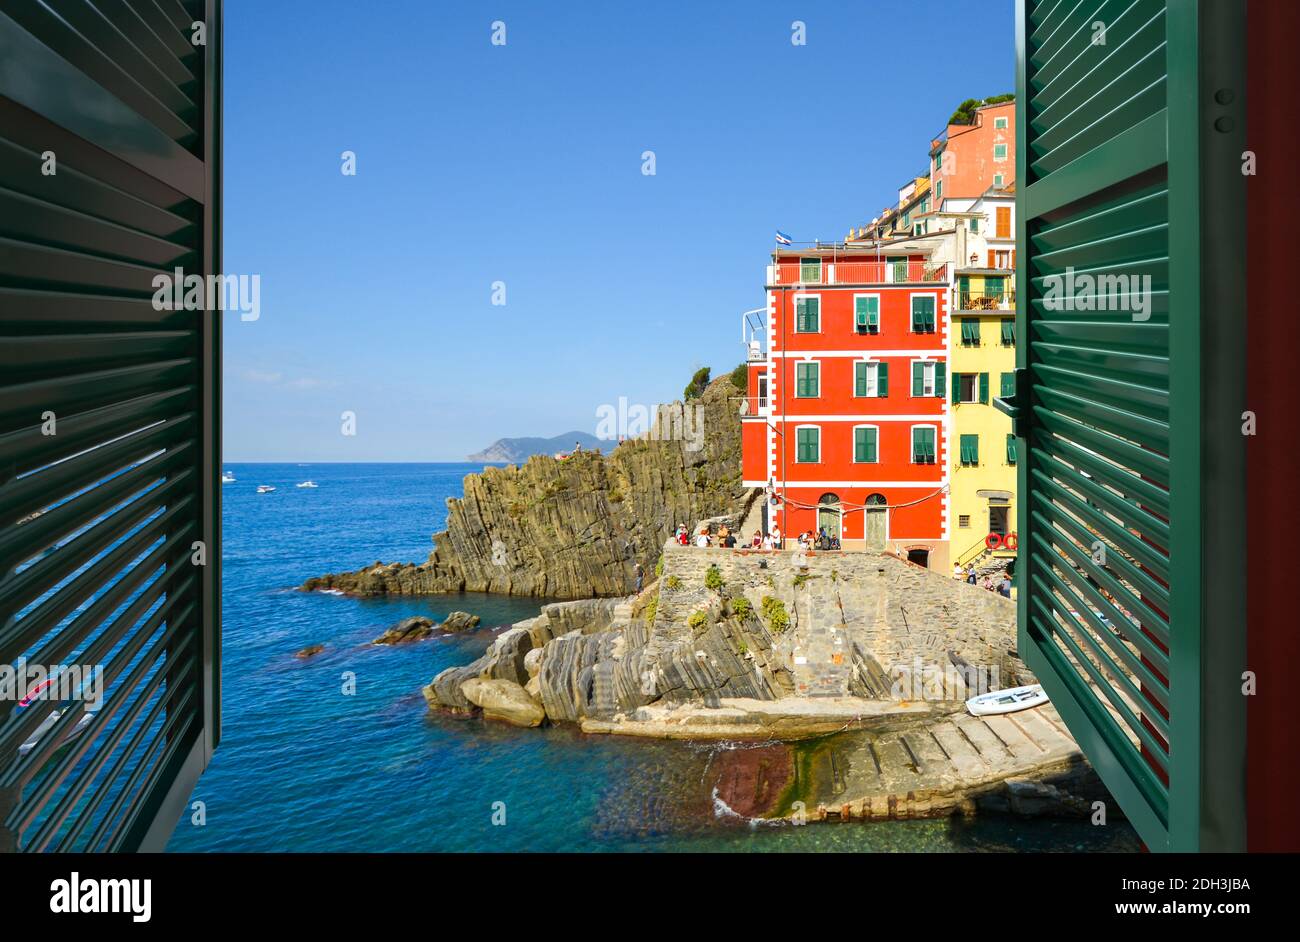 -Fotos und ein italien Blick offenes Auflösung in -Bildmaterial hoher fenster Alamy durch –